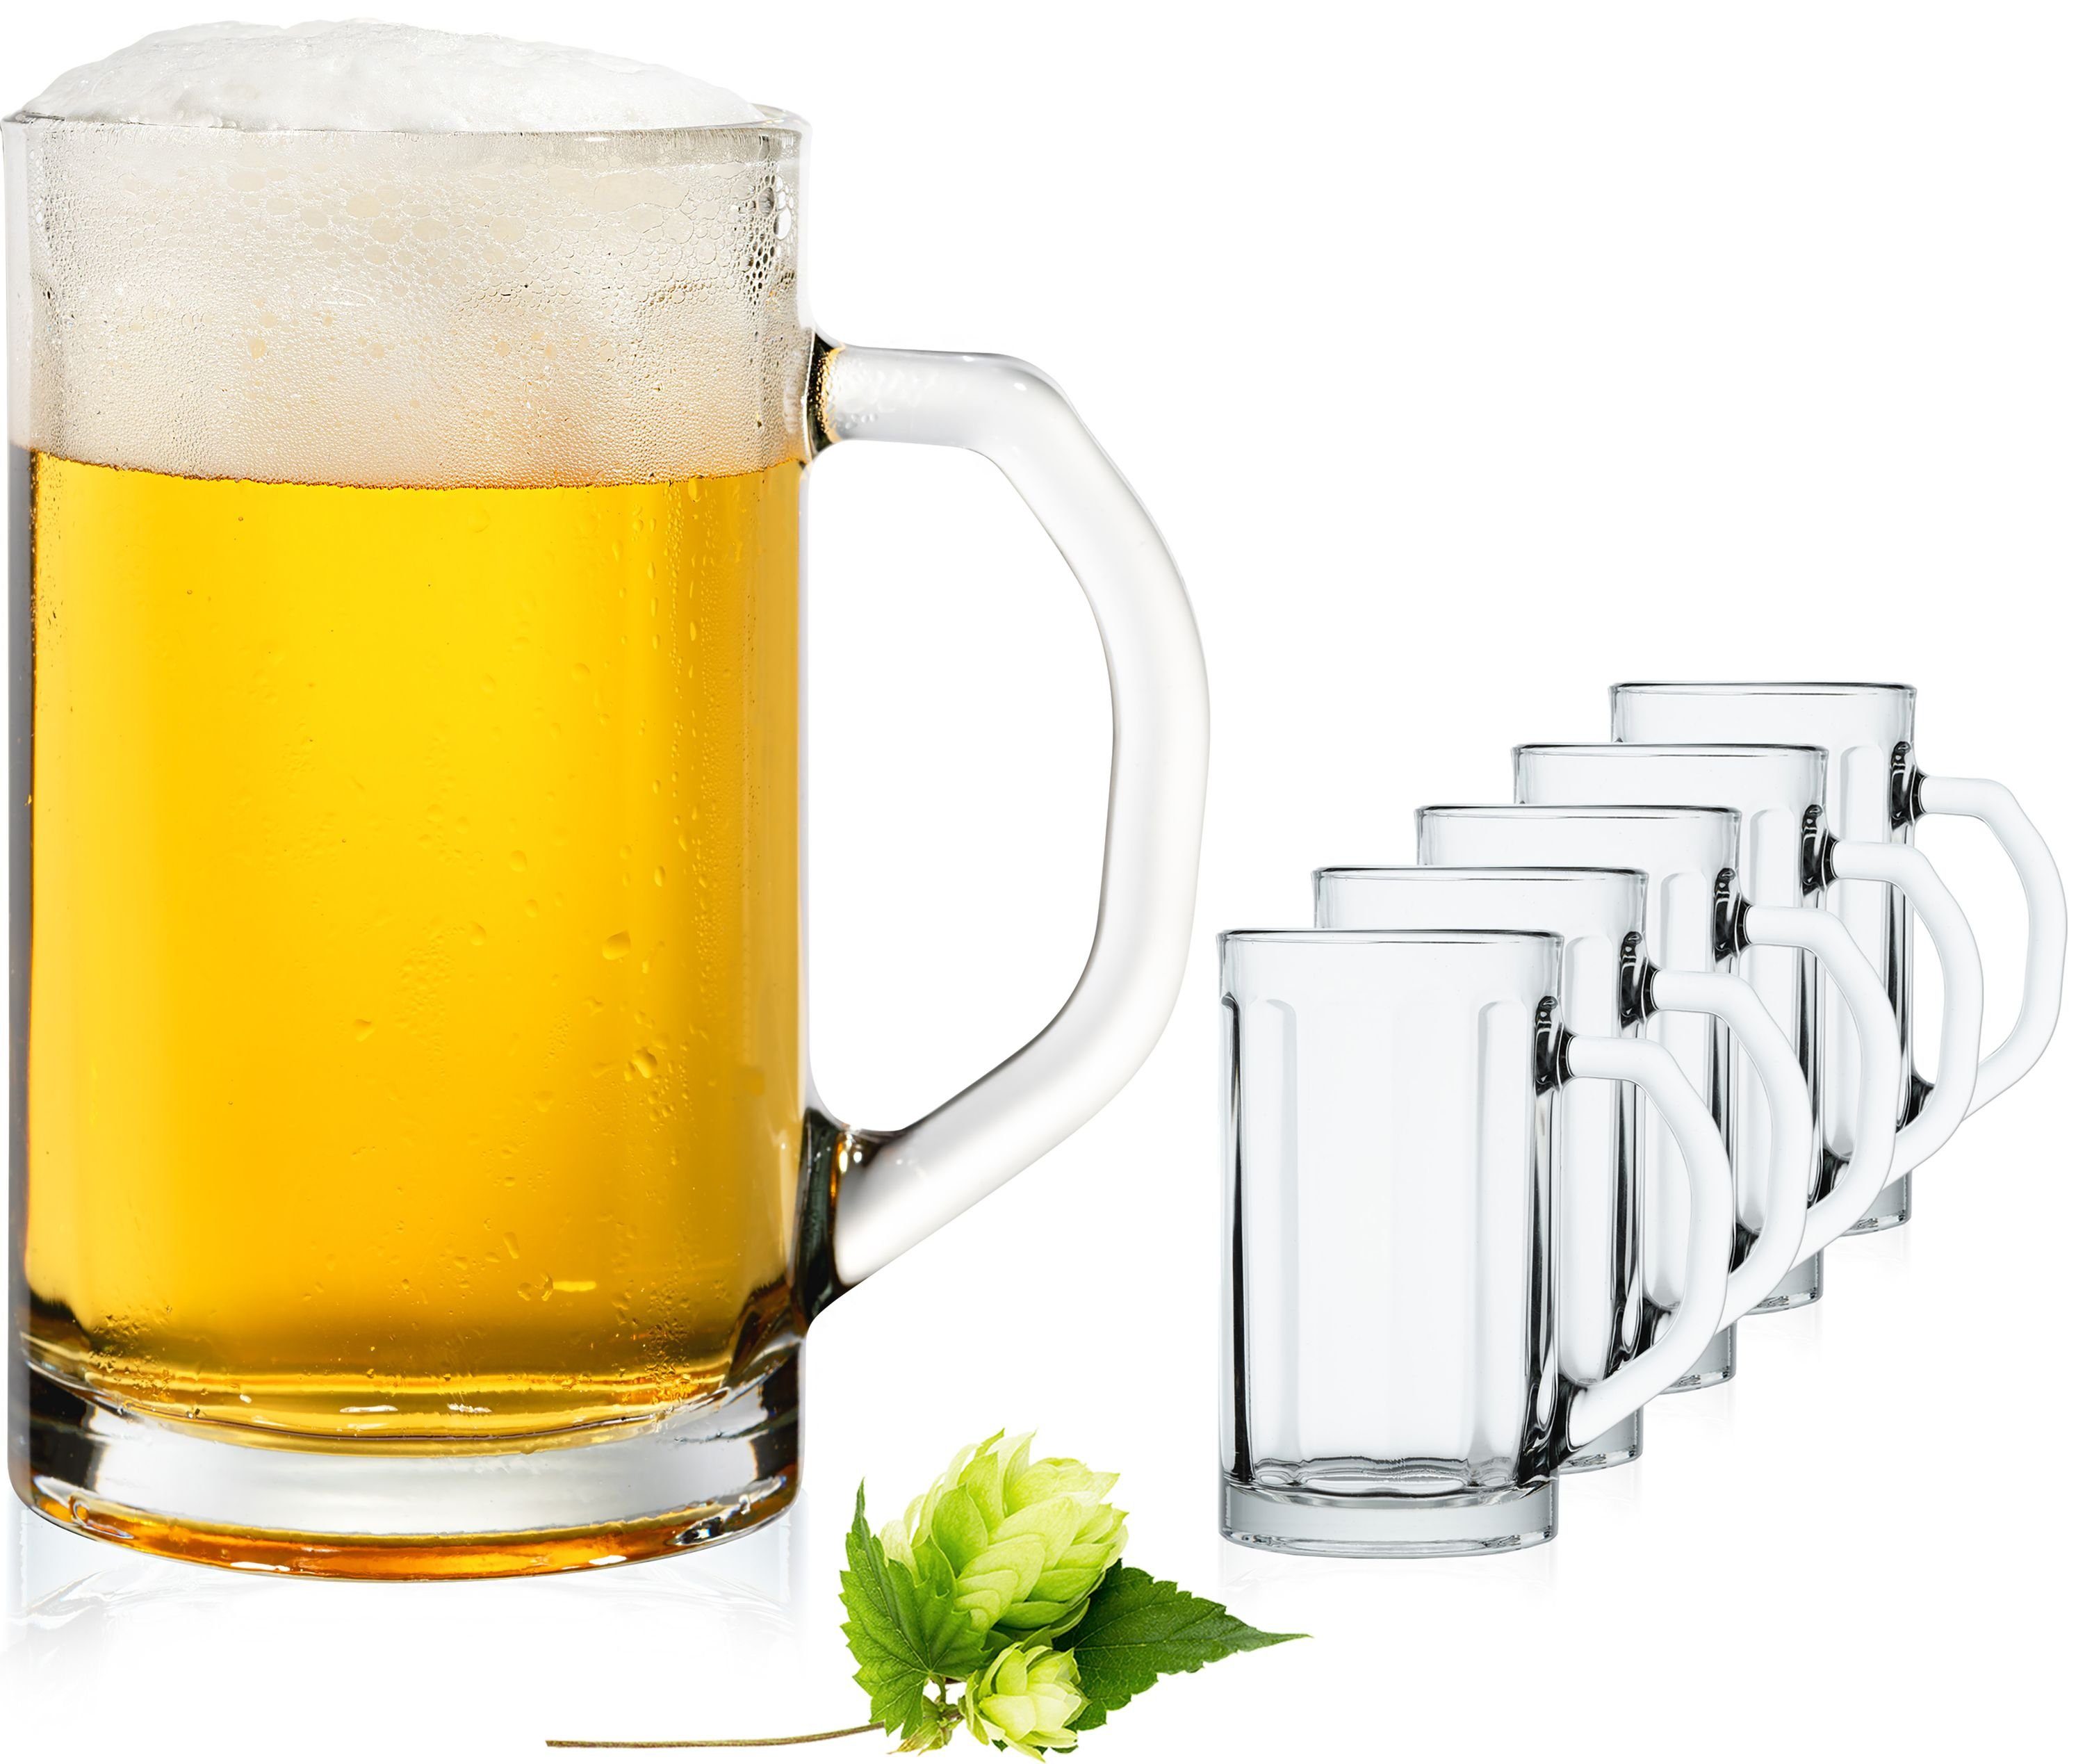 6 x Bierkrug Maßkrüge Biergläser Bierglas Gläser Henkel Bierseidel Bierkrüge ! 